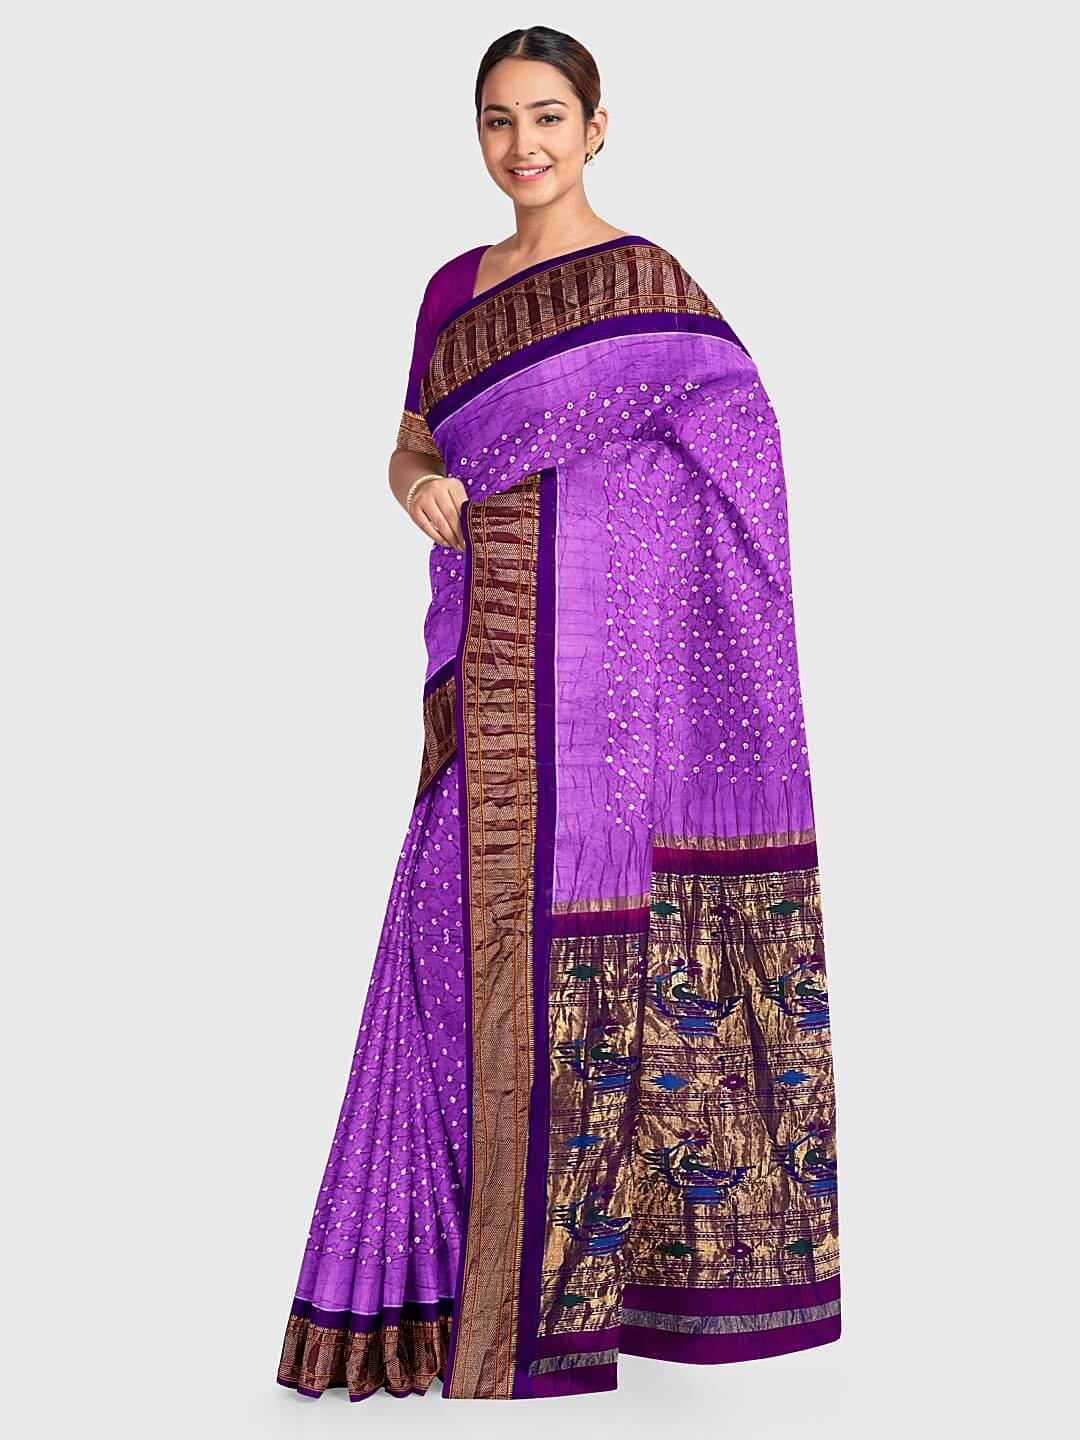 Pure Cotton Sarees For Women: गर्मी के मौसम में पहनें फैशनेबल कॉटन साड़ी,  दिखेंगी बेहद खूबसूरत | pure cotton sarees for women to get best comfort  with fashionable look | HerZindagi